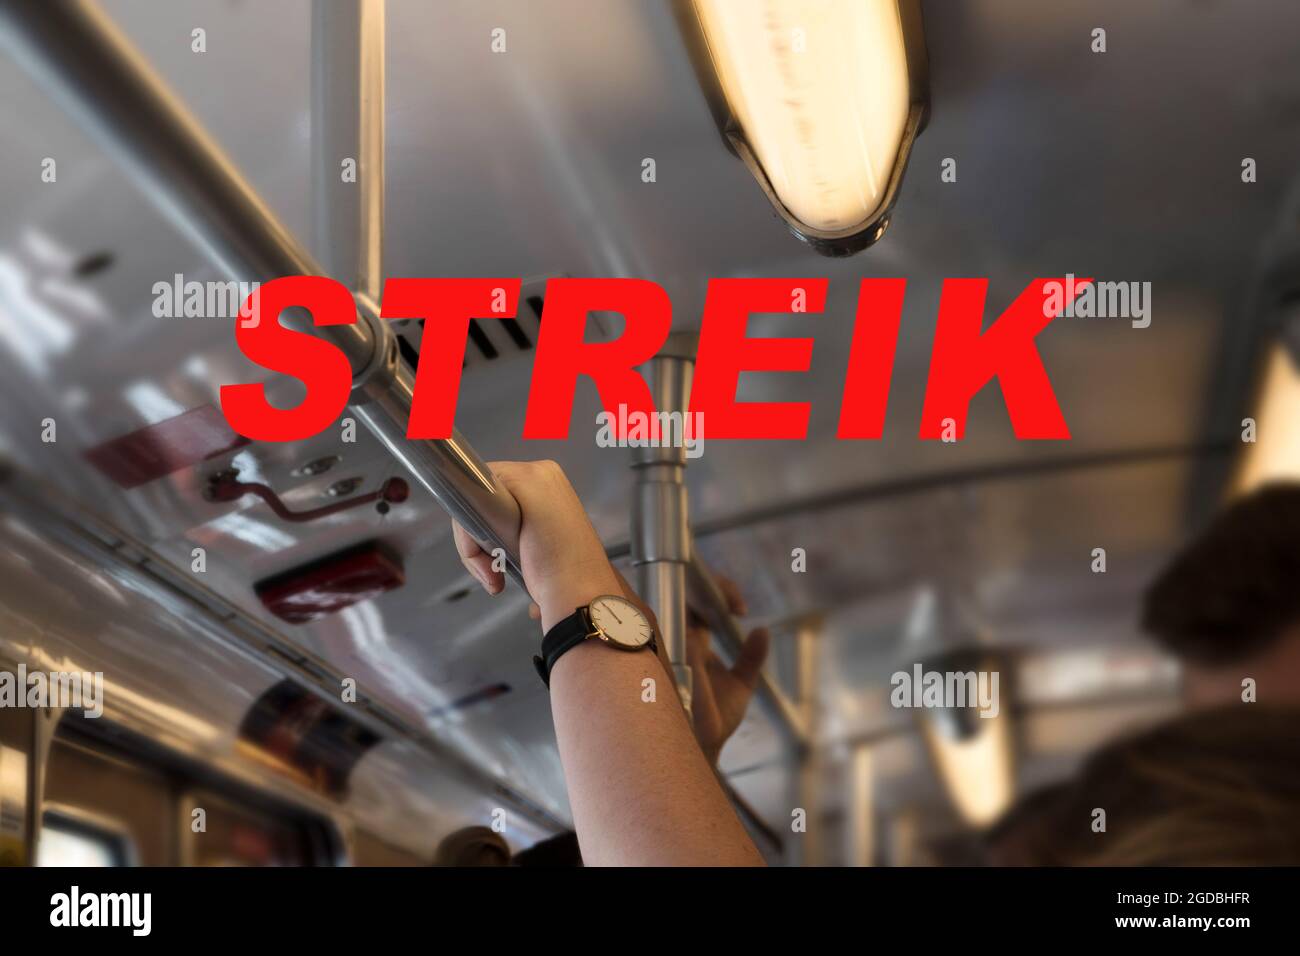 Texte allemand Streik (signifiant grève) et une main tenant sur le bar dans un train de métro pendant l'heure de pointe, focus sélectionné, profondeur de champ étroite Banque D'Images